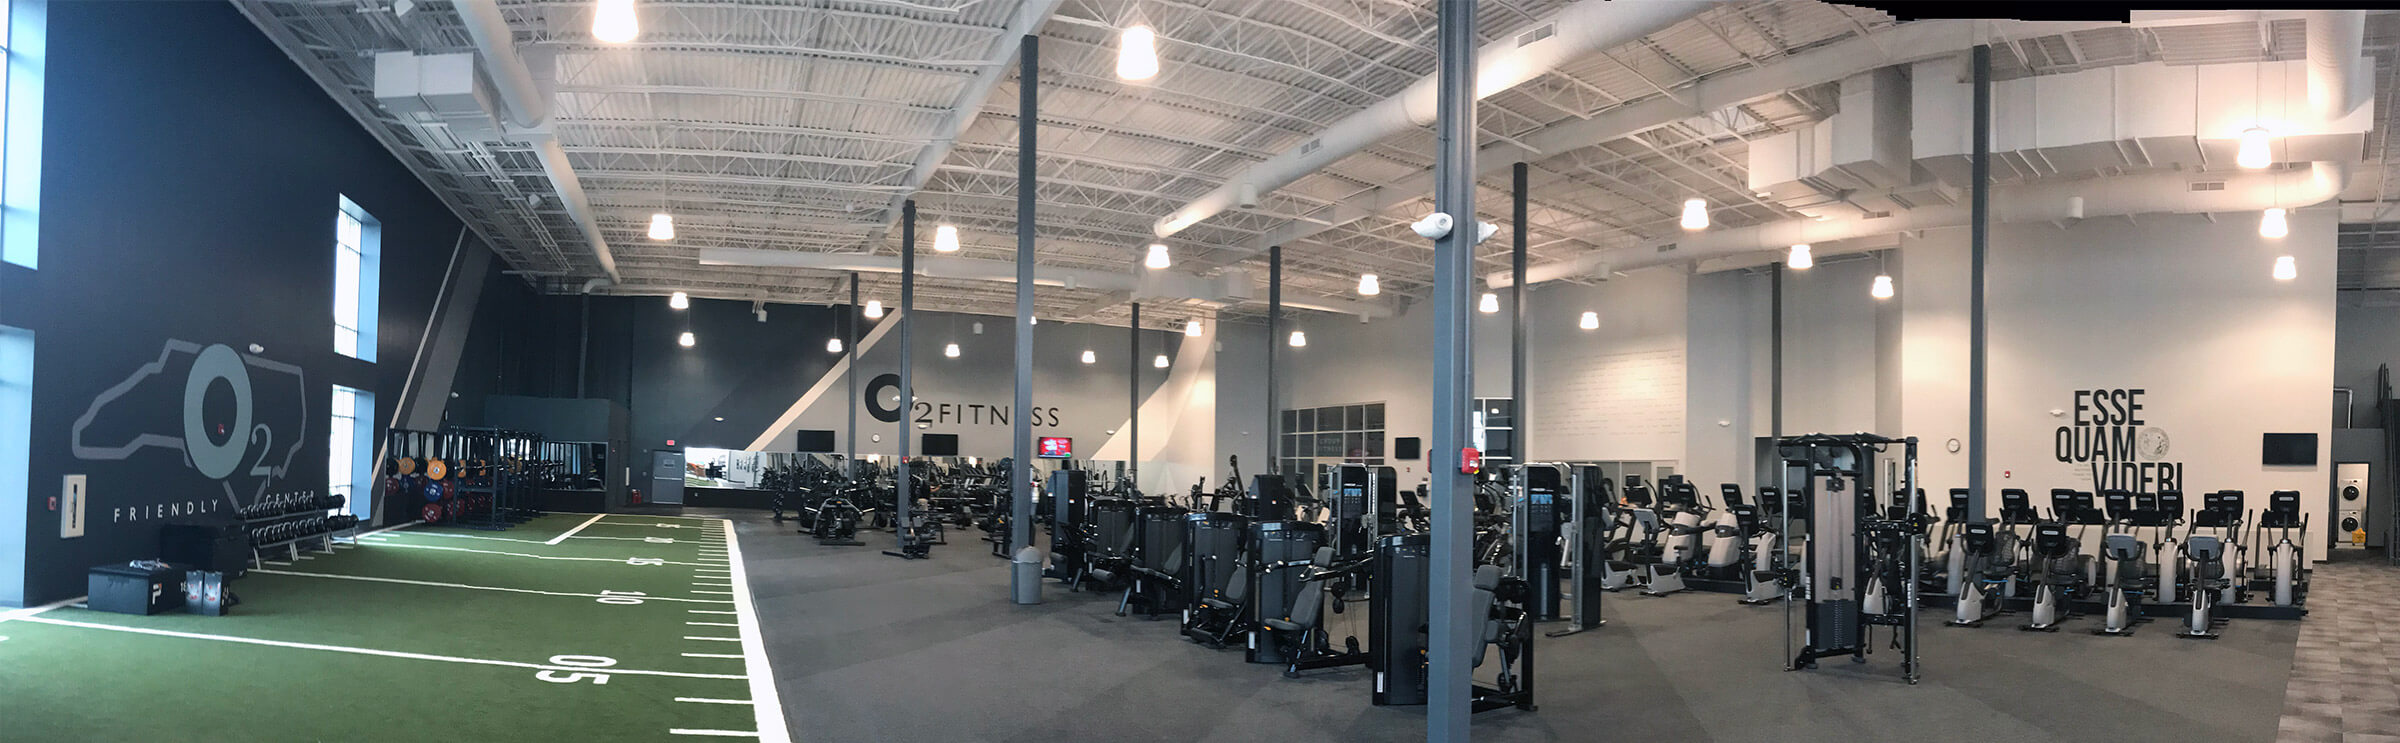 Gym in Greensboro  O2 Fitness Greensboro - Friendly Center